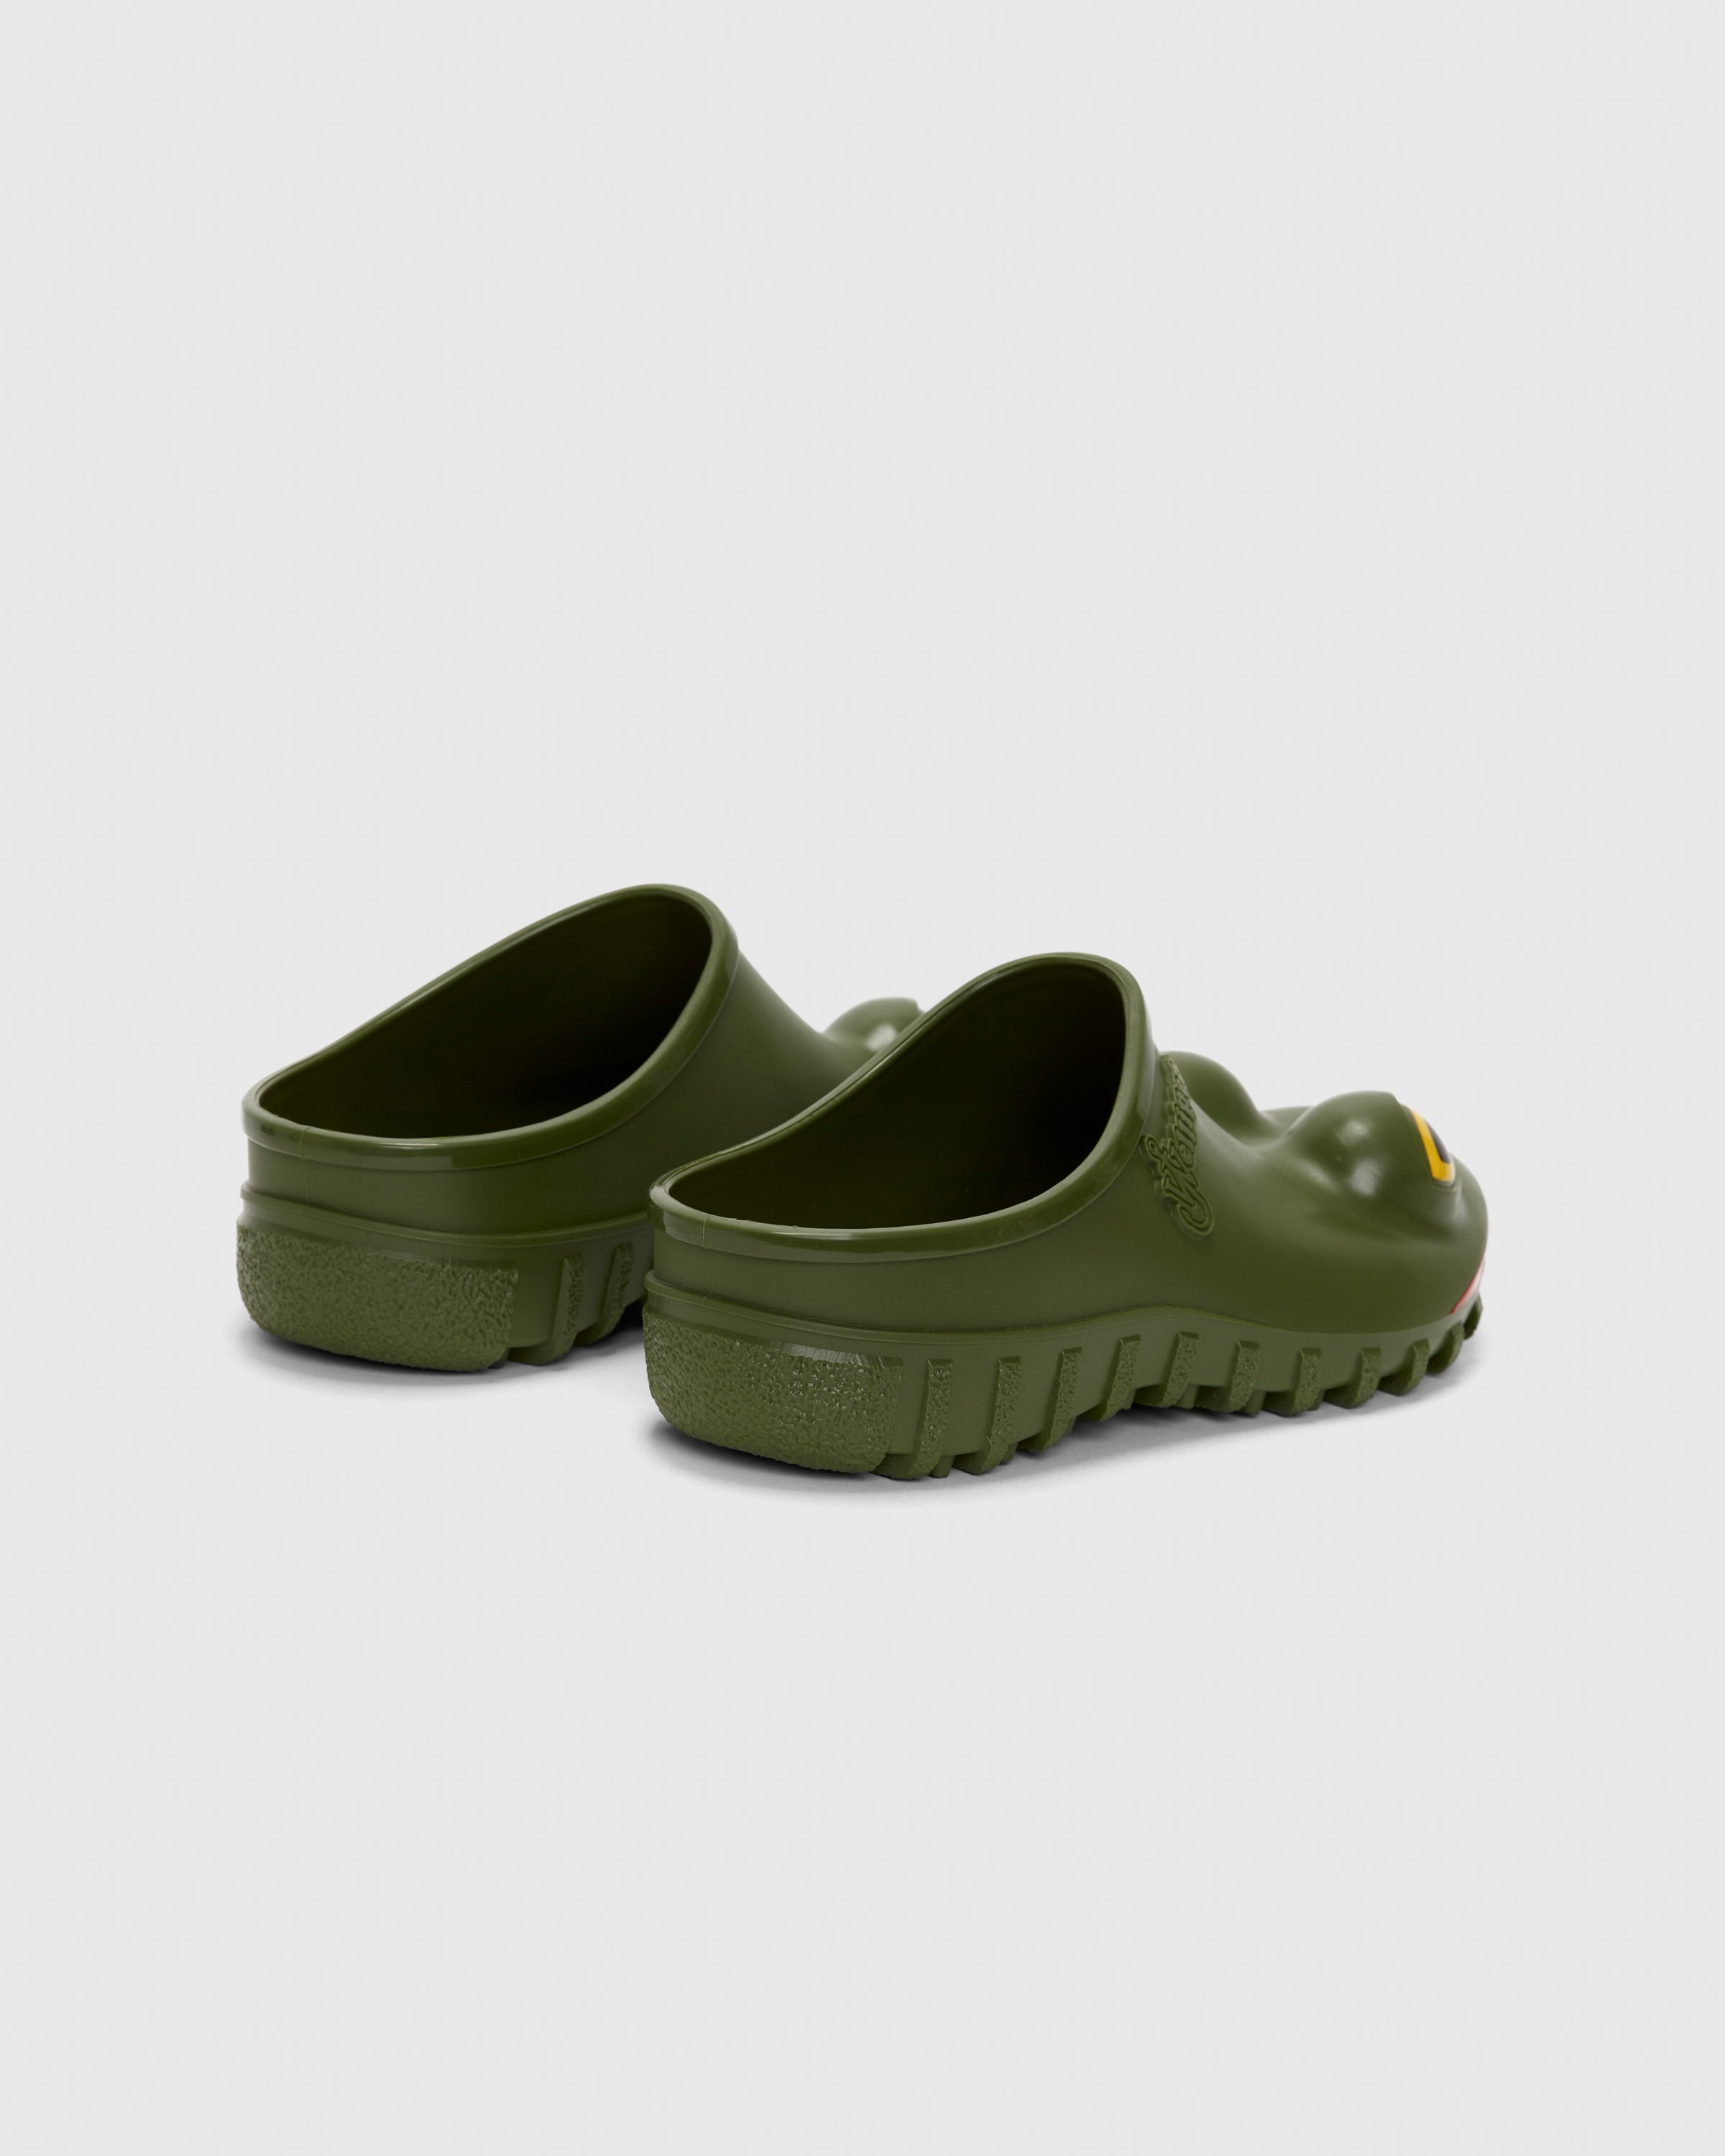 J.W. Anderson x Wellipets - Frog Loafer Green - Footwear - Green - Image 3